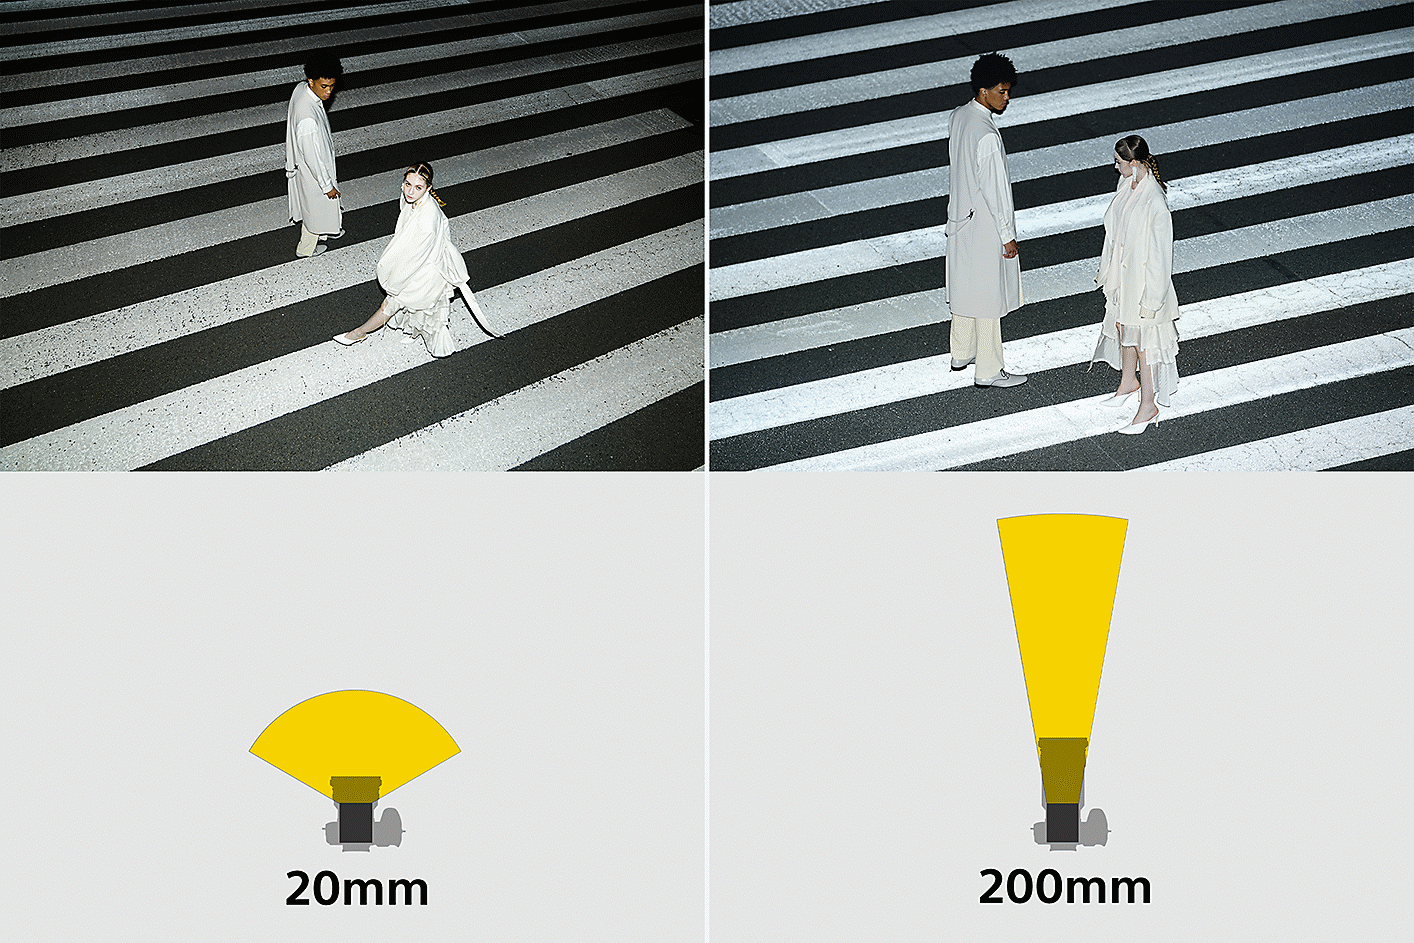 Ilustrație care arată faptul că unghiul de iluminare al blițului este ajustat automat pentru a corespunde distanței focale